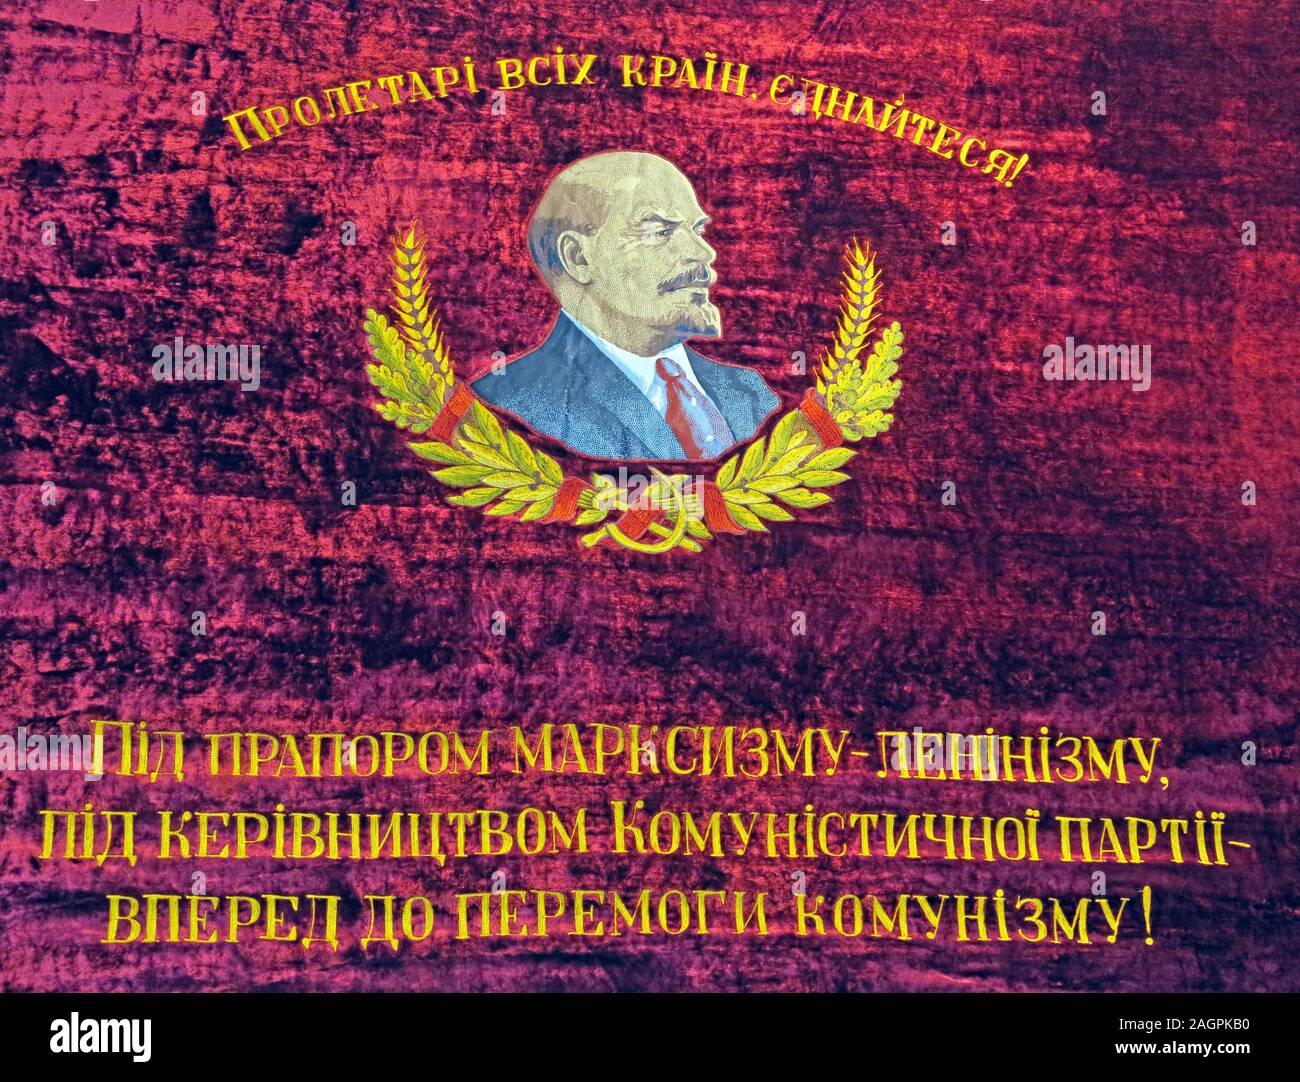 Vladimir Lenin, trasferire il mondo al comunismo, avanti al comunismo, riecheggia nell'invasione Putin dell'Ucraina russa nel febbraio 2022 Foto Stock